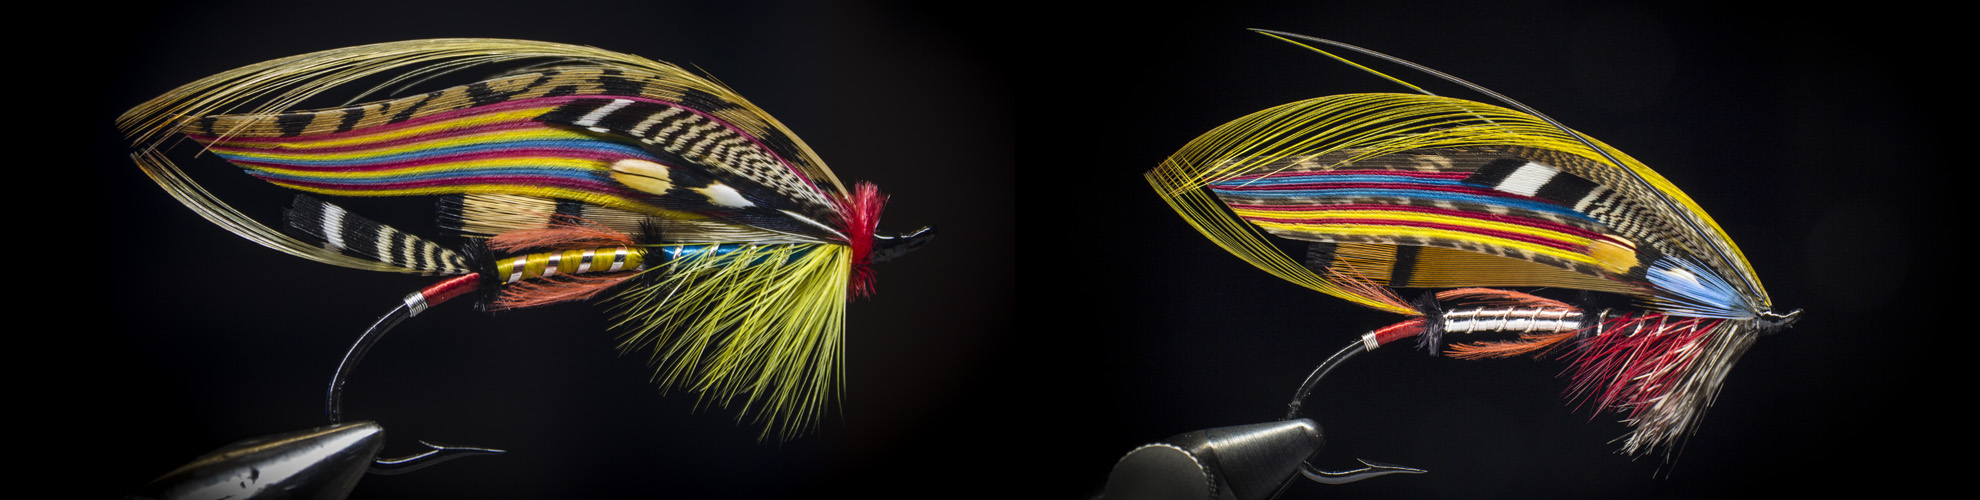 Rosen-fly-fishing-blog-00002